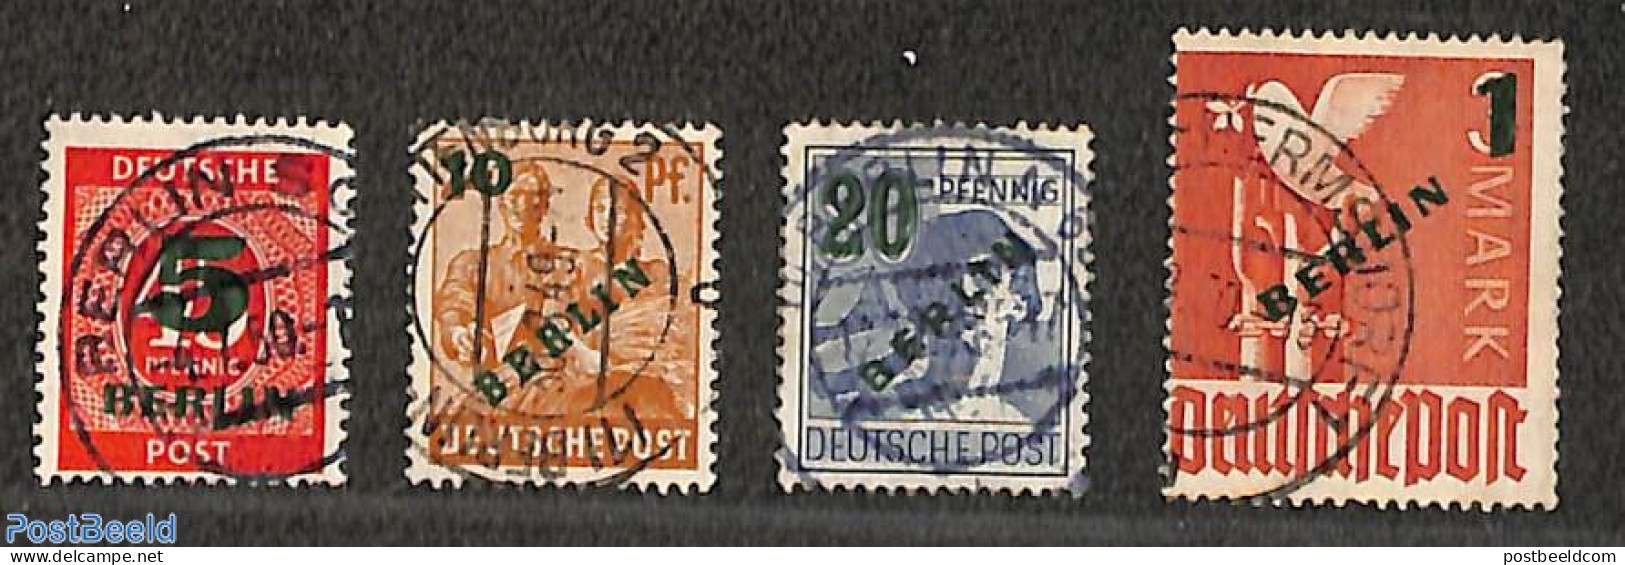 Germany, Berlin 1949 Overprints 4v, Used, Used Or CTO - Gebruikt